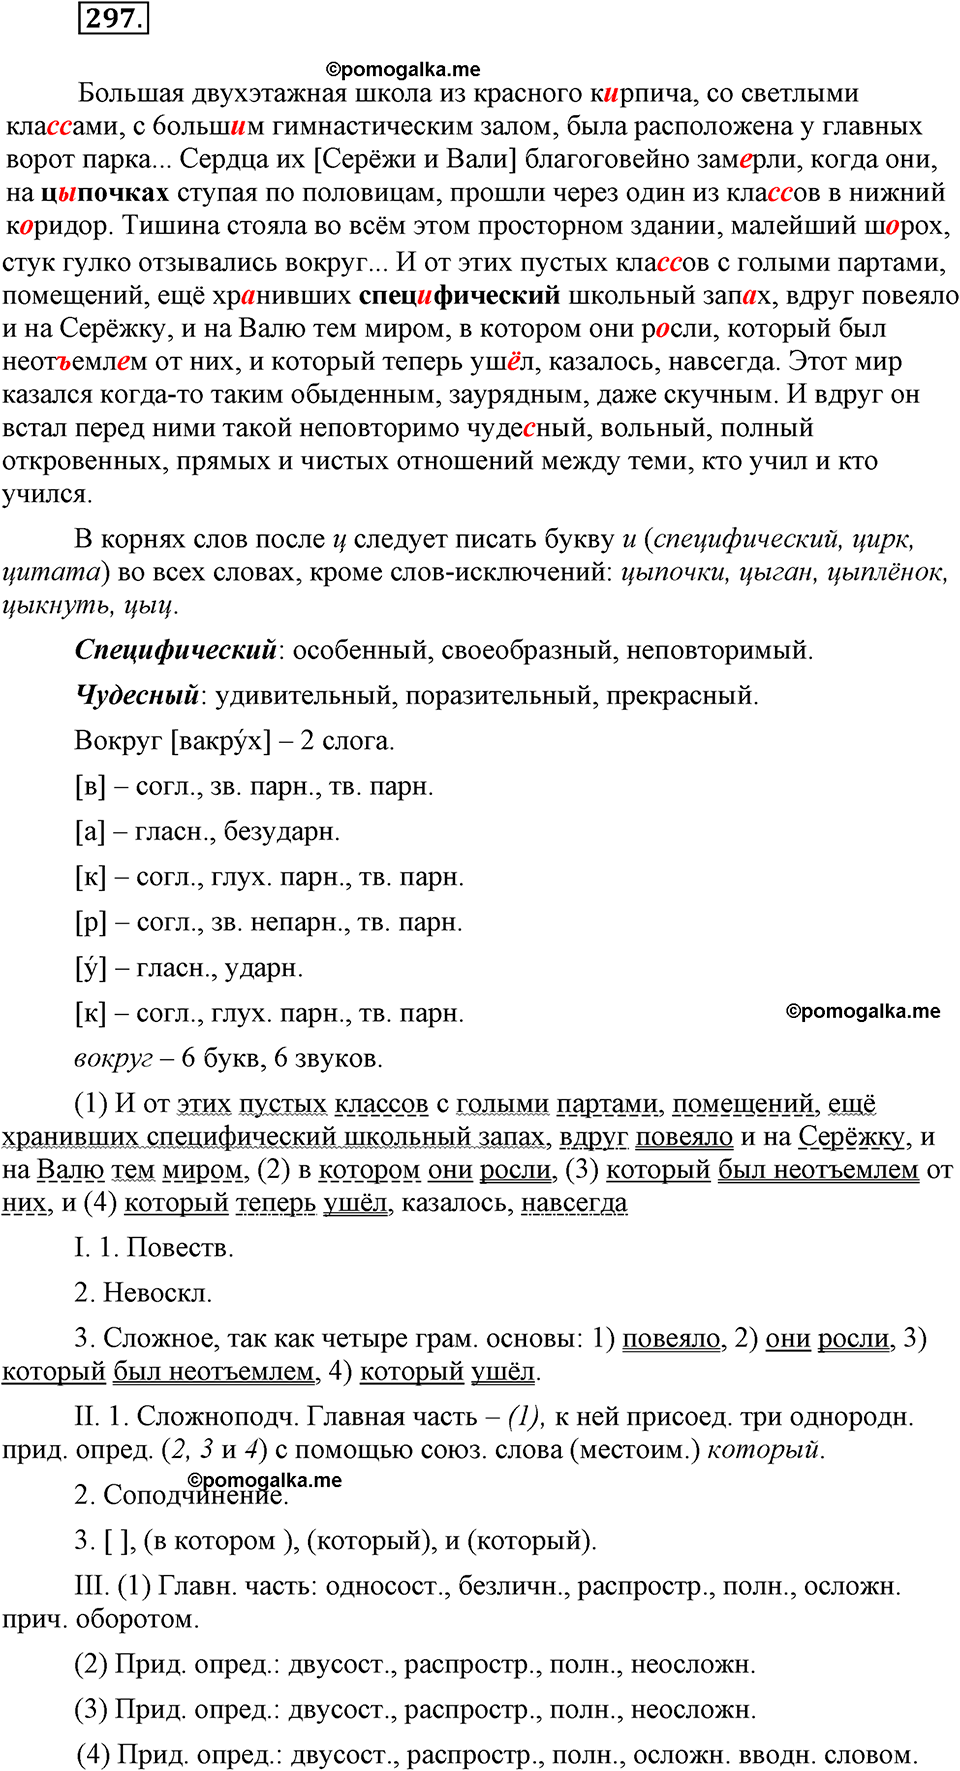 страница 138 номер 297 русский язык 9 класс Бархударов 2011 год